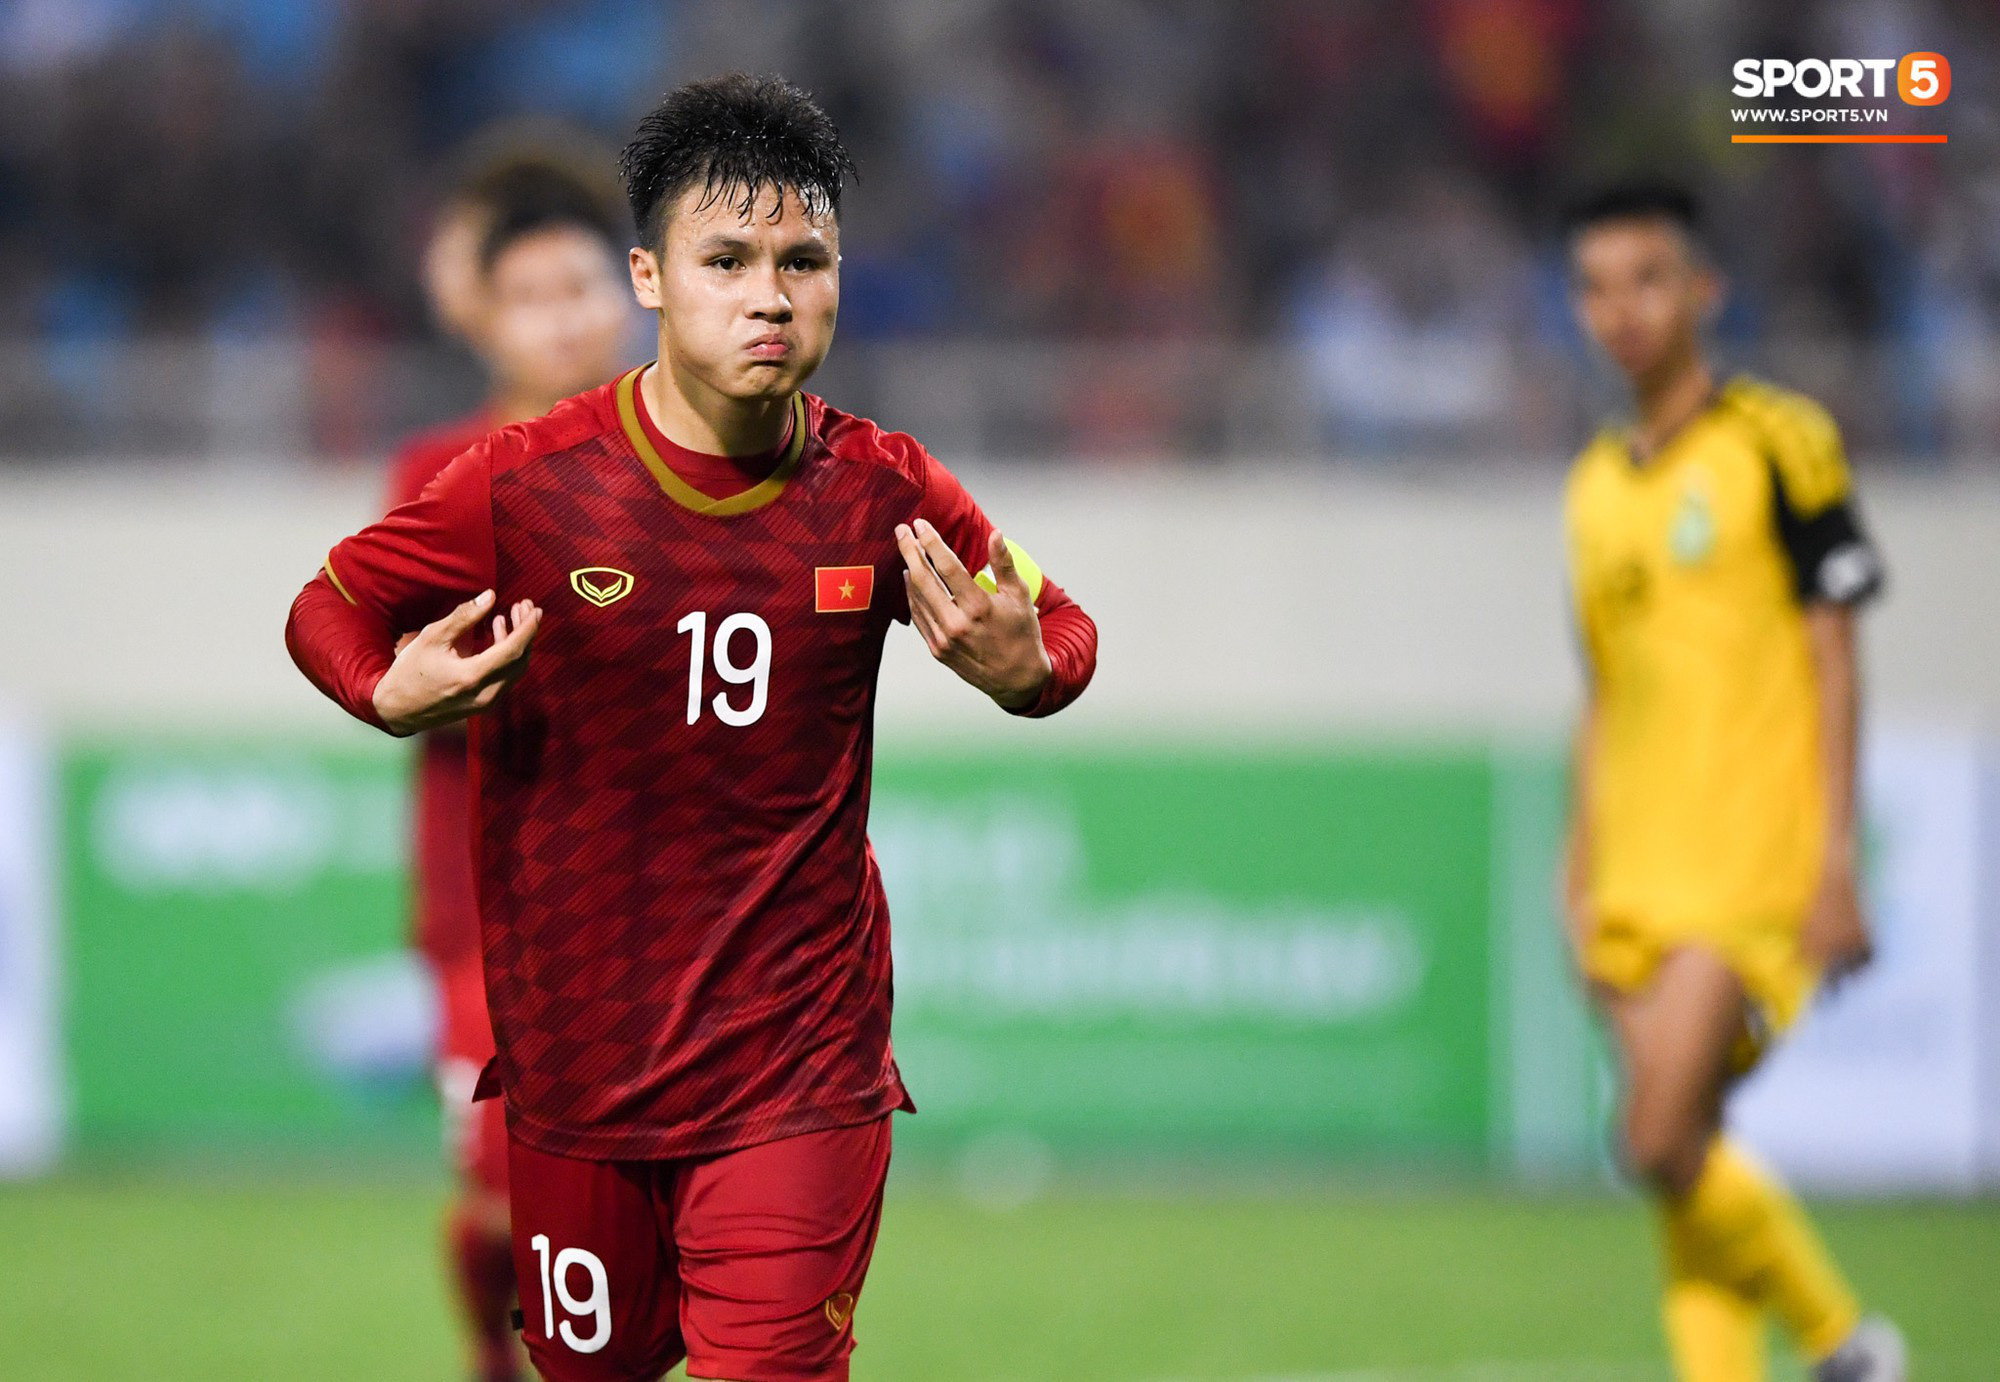 FIFA liệt kê 4 ứng cử viên hàng đầu cho ngôi vô địch U23 châu Á: Việt Nam vắng mặt, nhưng thuộc nhóm ngựa ô không thể xem thường - Ảnh 1.